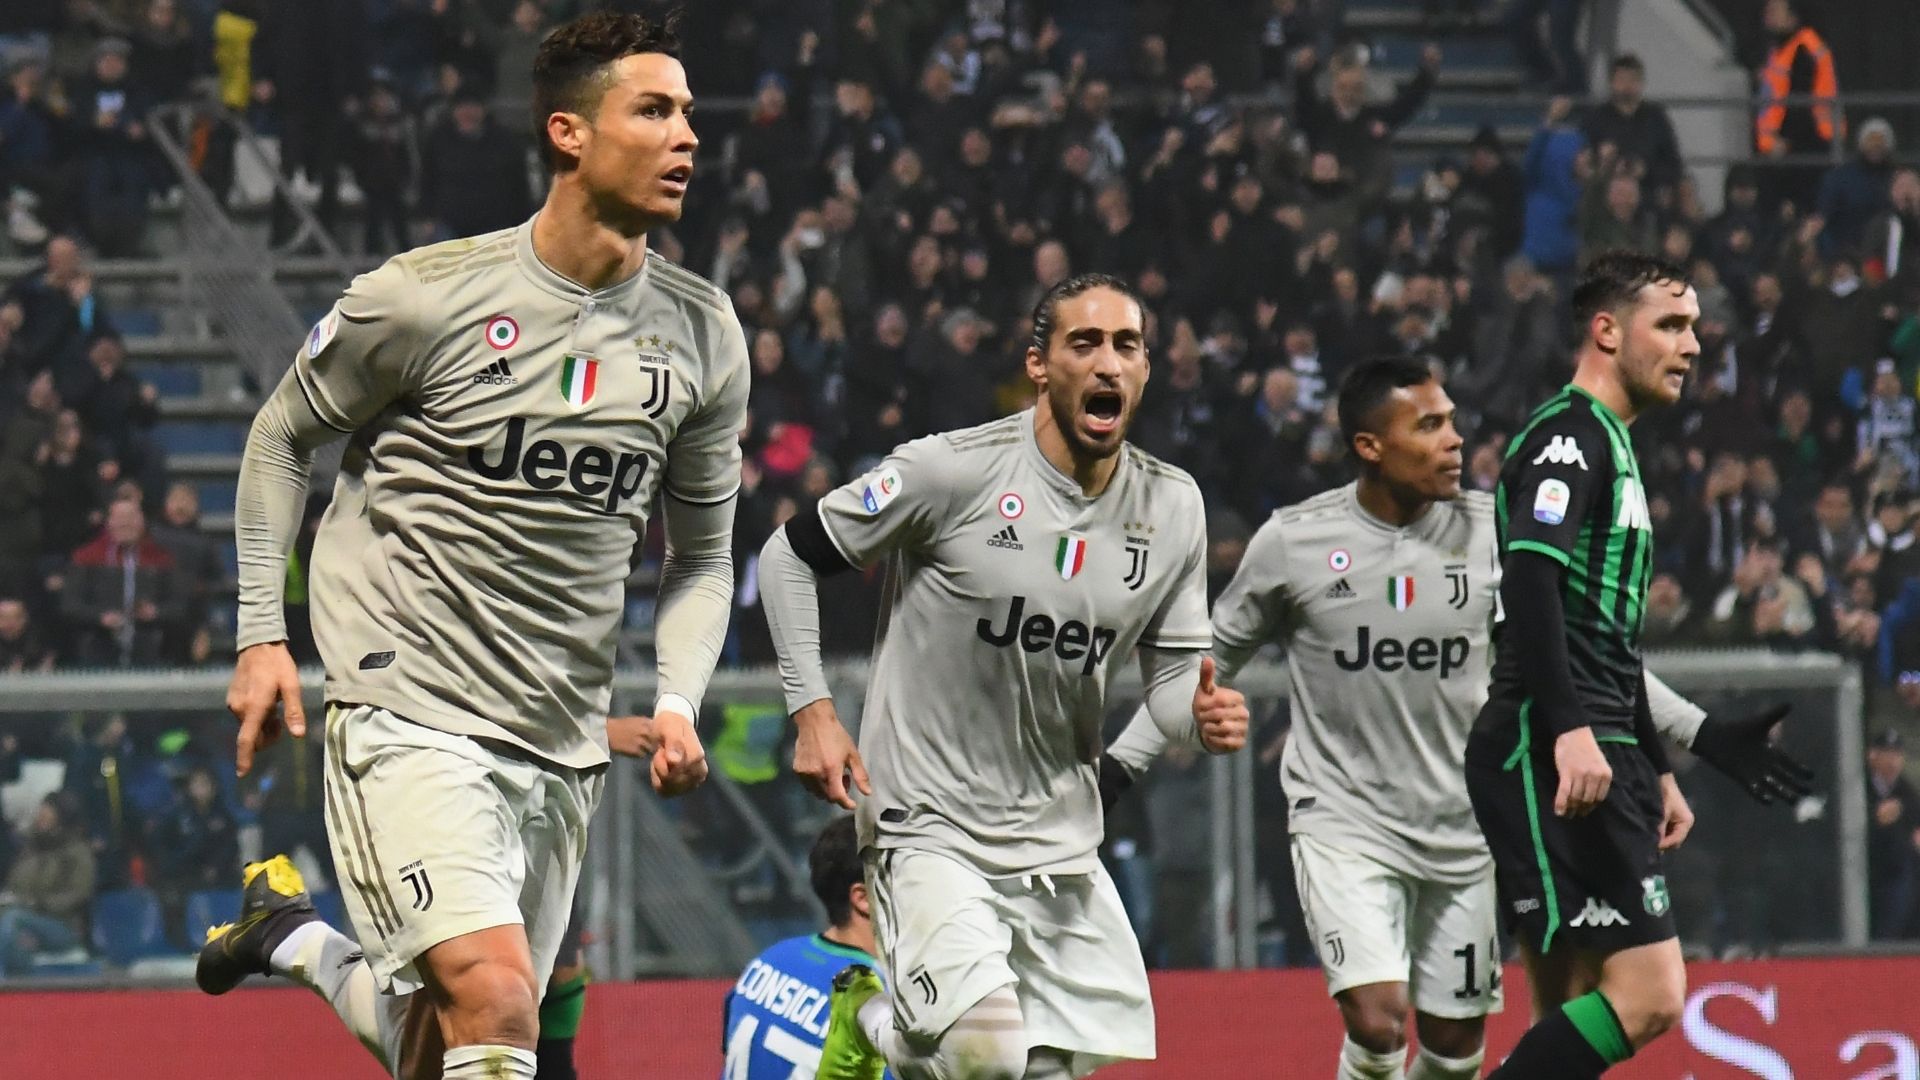 Choáng với hiệu suất làm bàn không tưởng của Ronaldo giúp Juventus thống trị Serie A